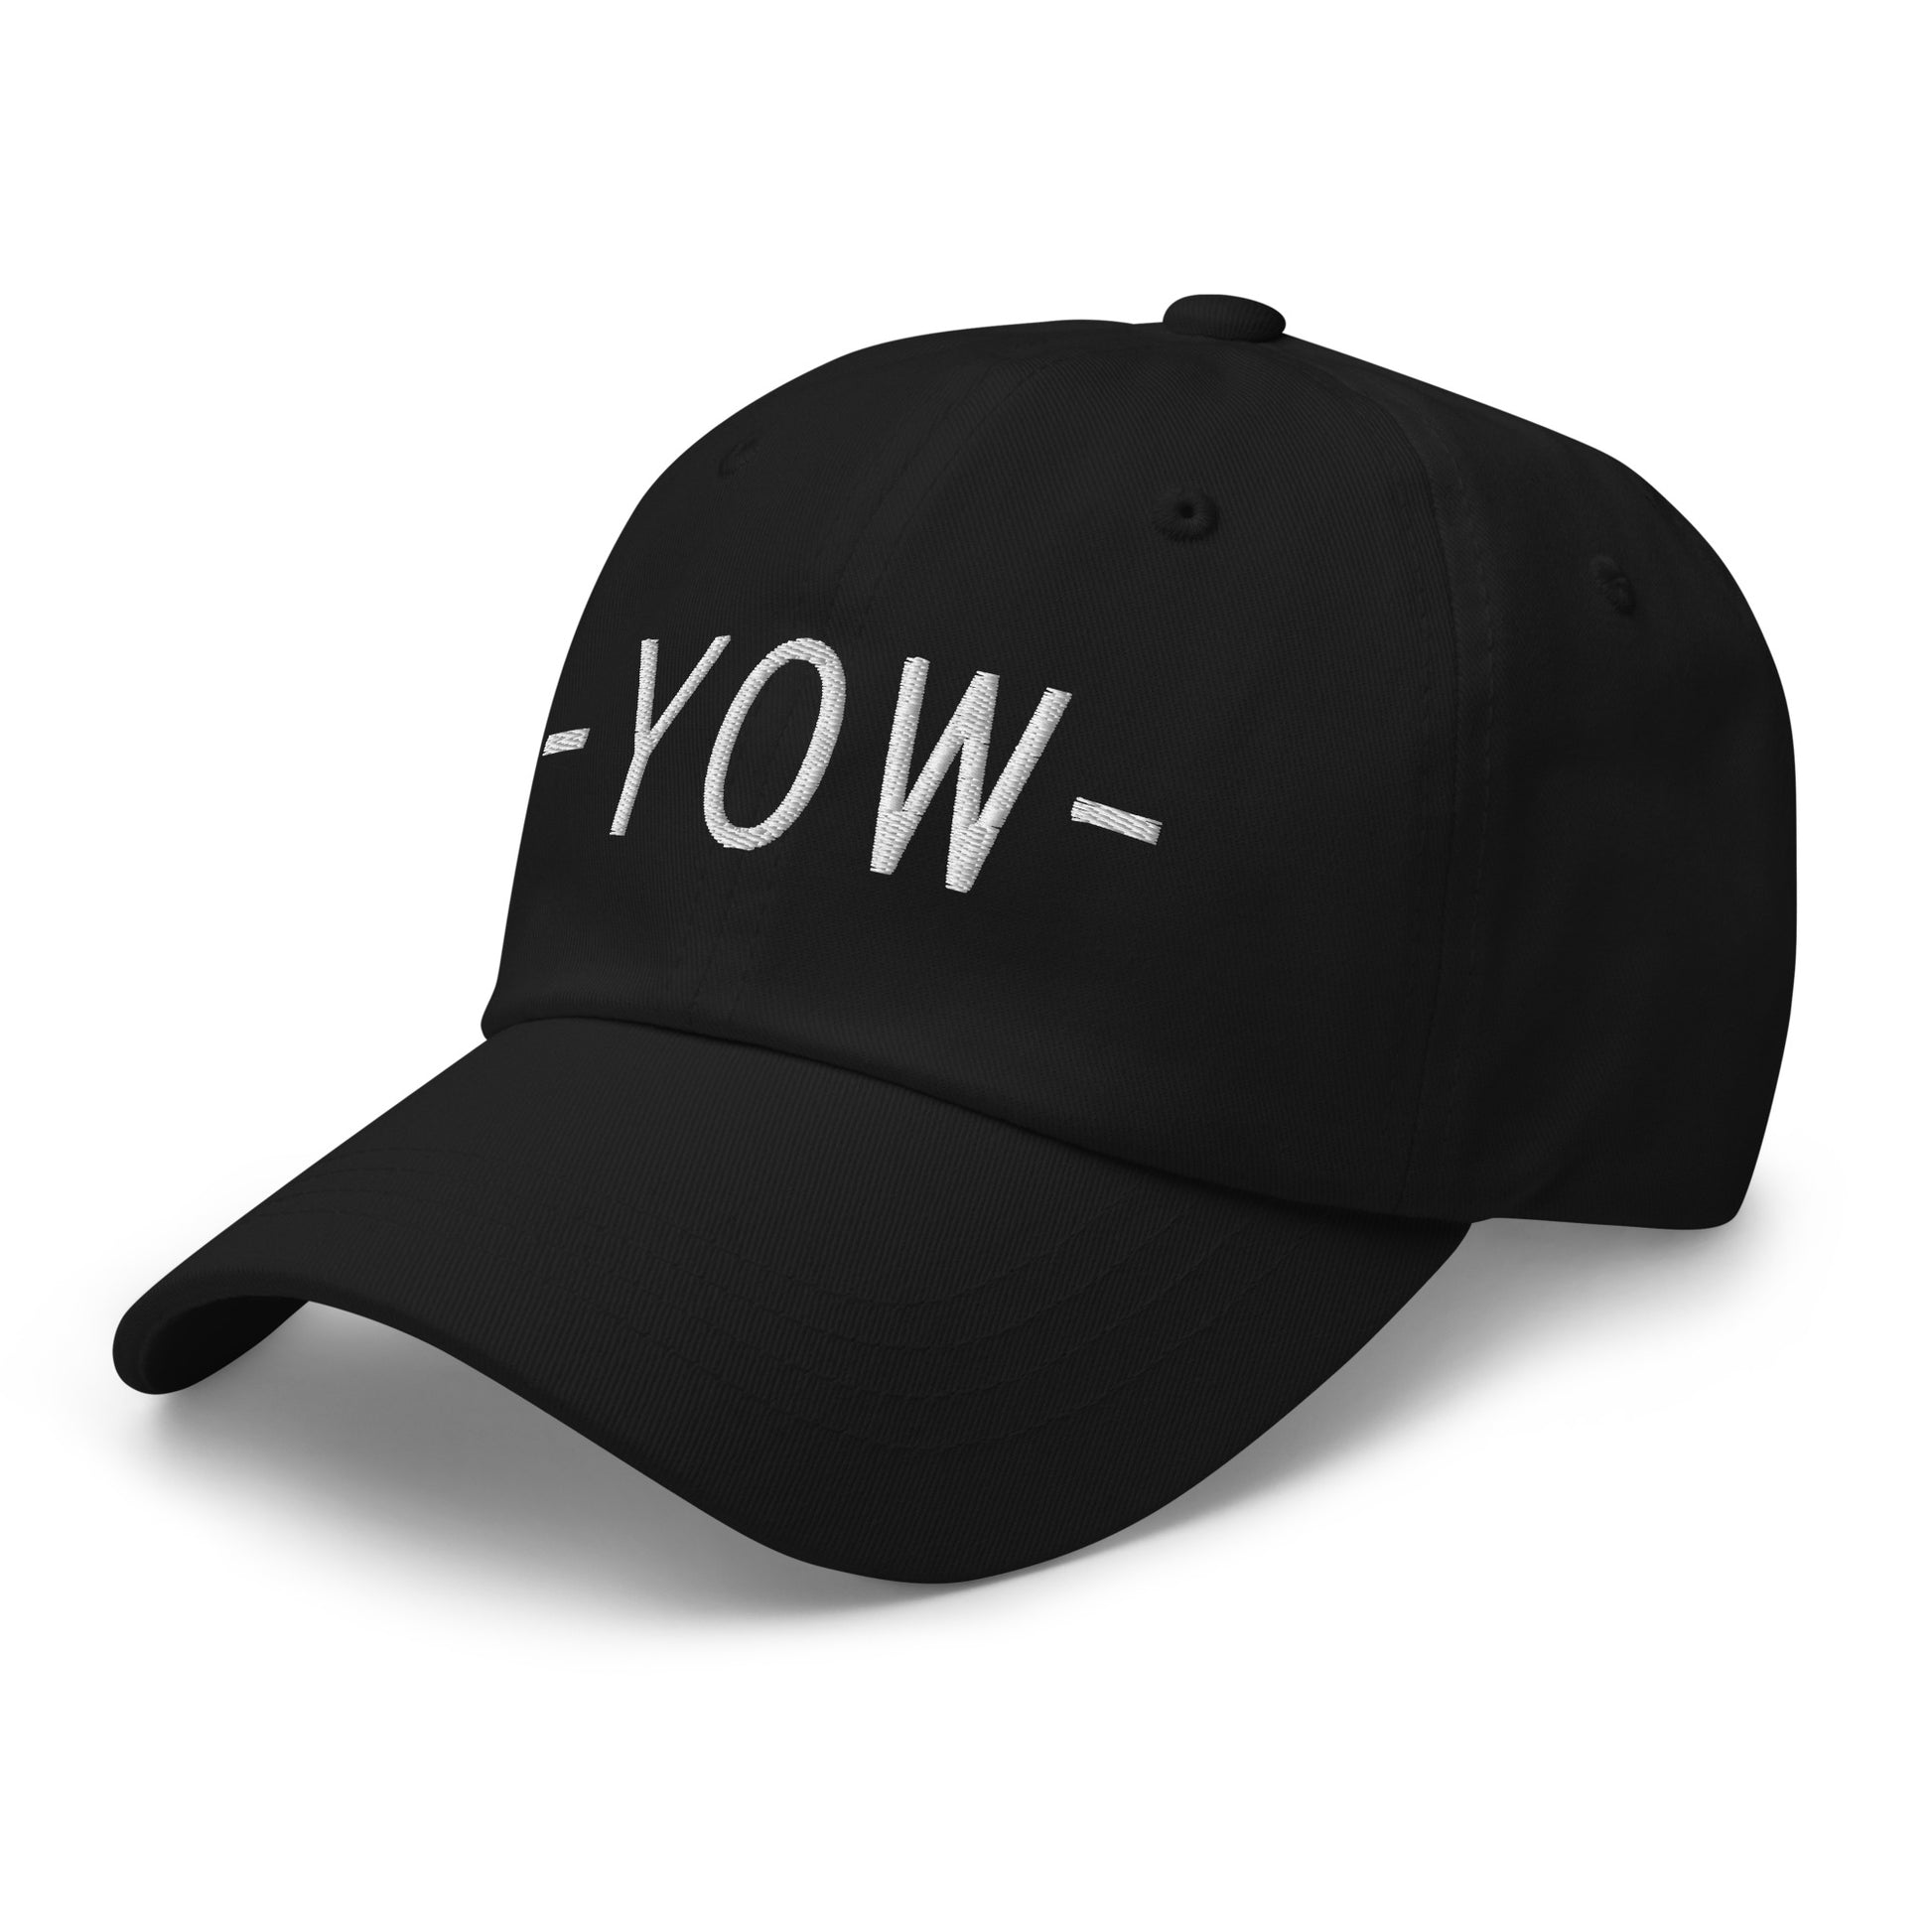 Souvenir Baseball Cap - White • YOW Ottawa • YHM Designs - Image 13